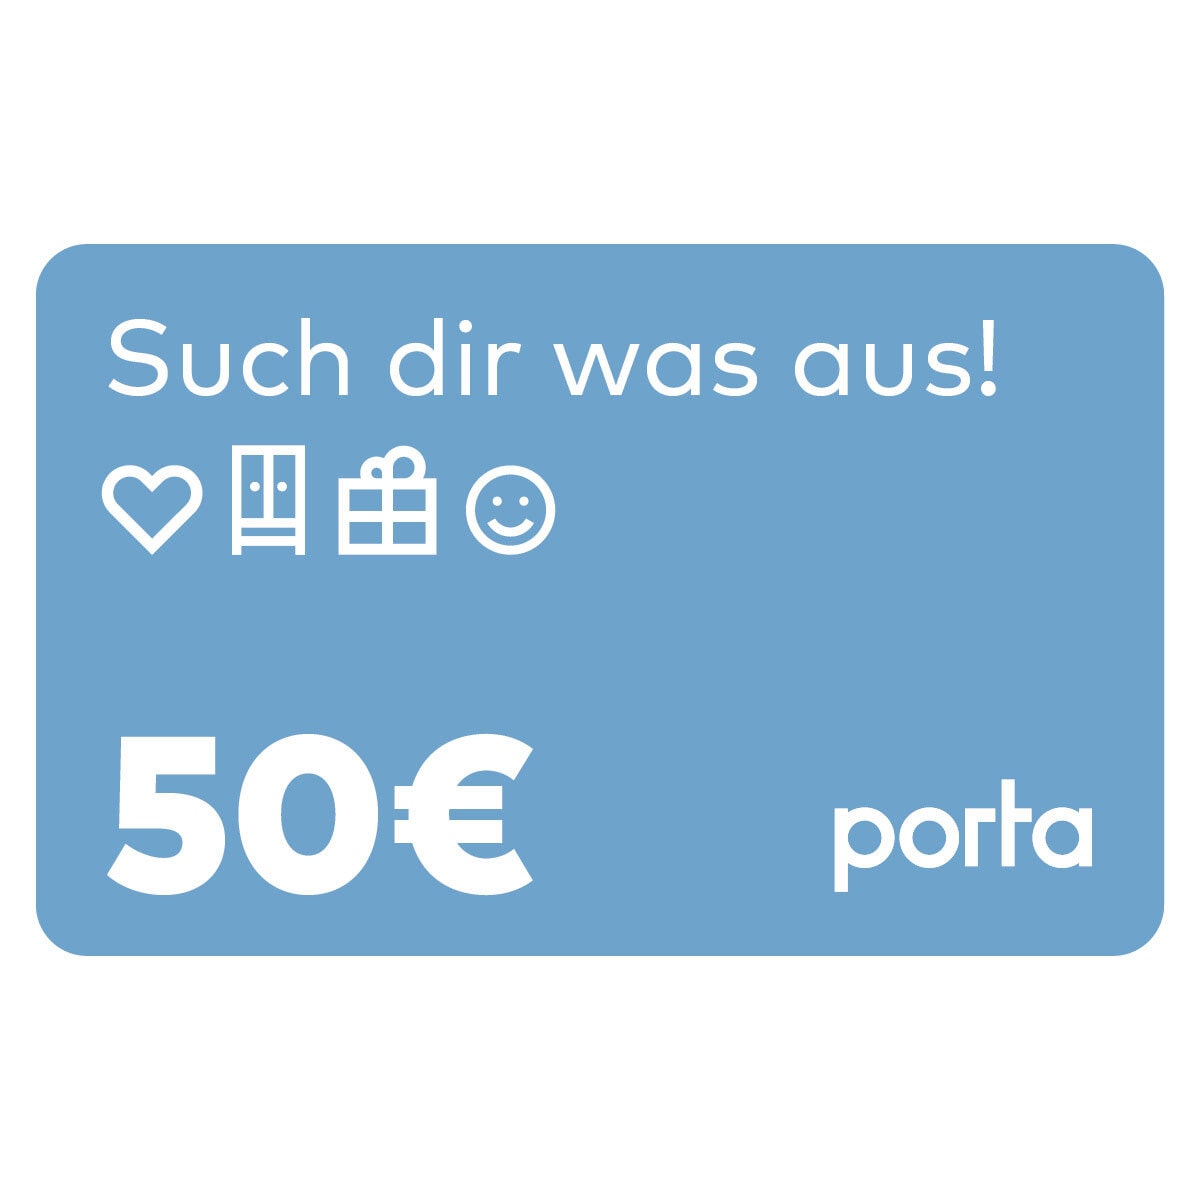 Gutschein 50,00 Euro